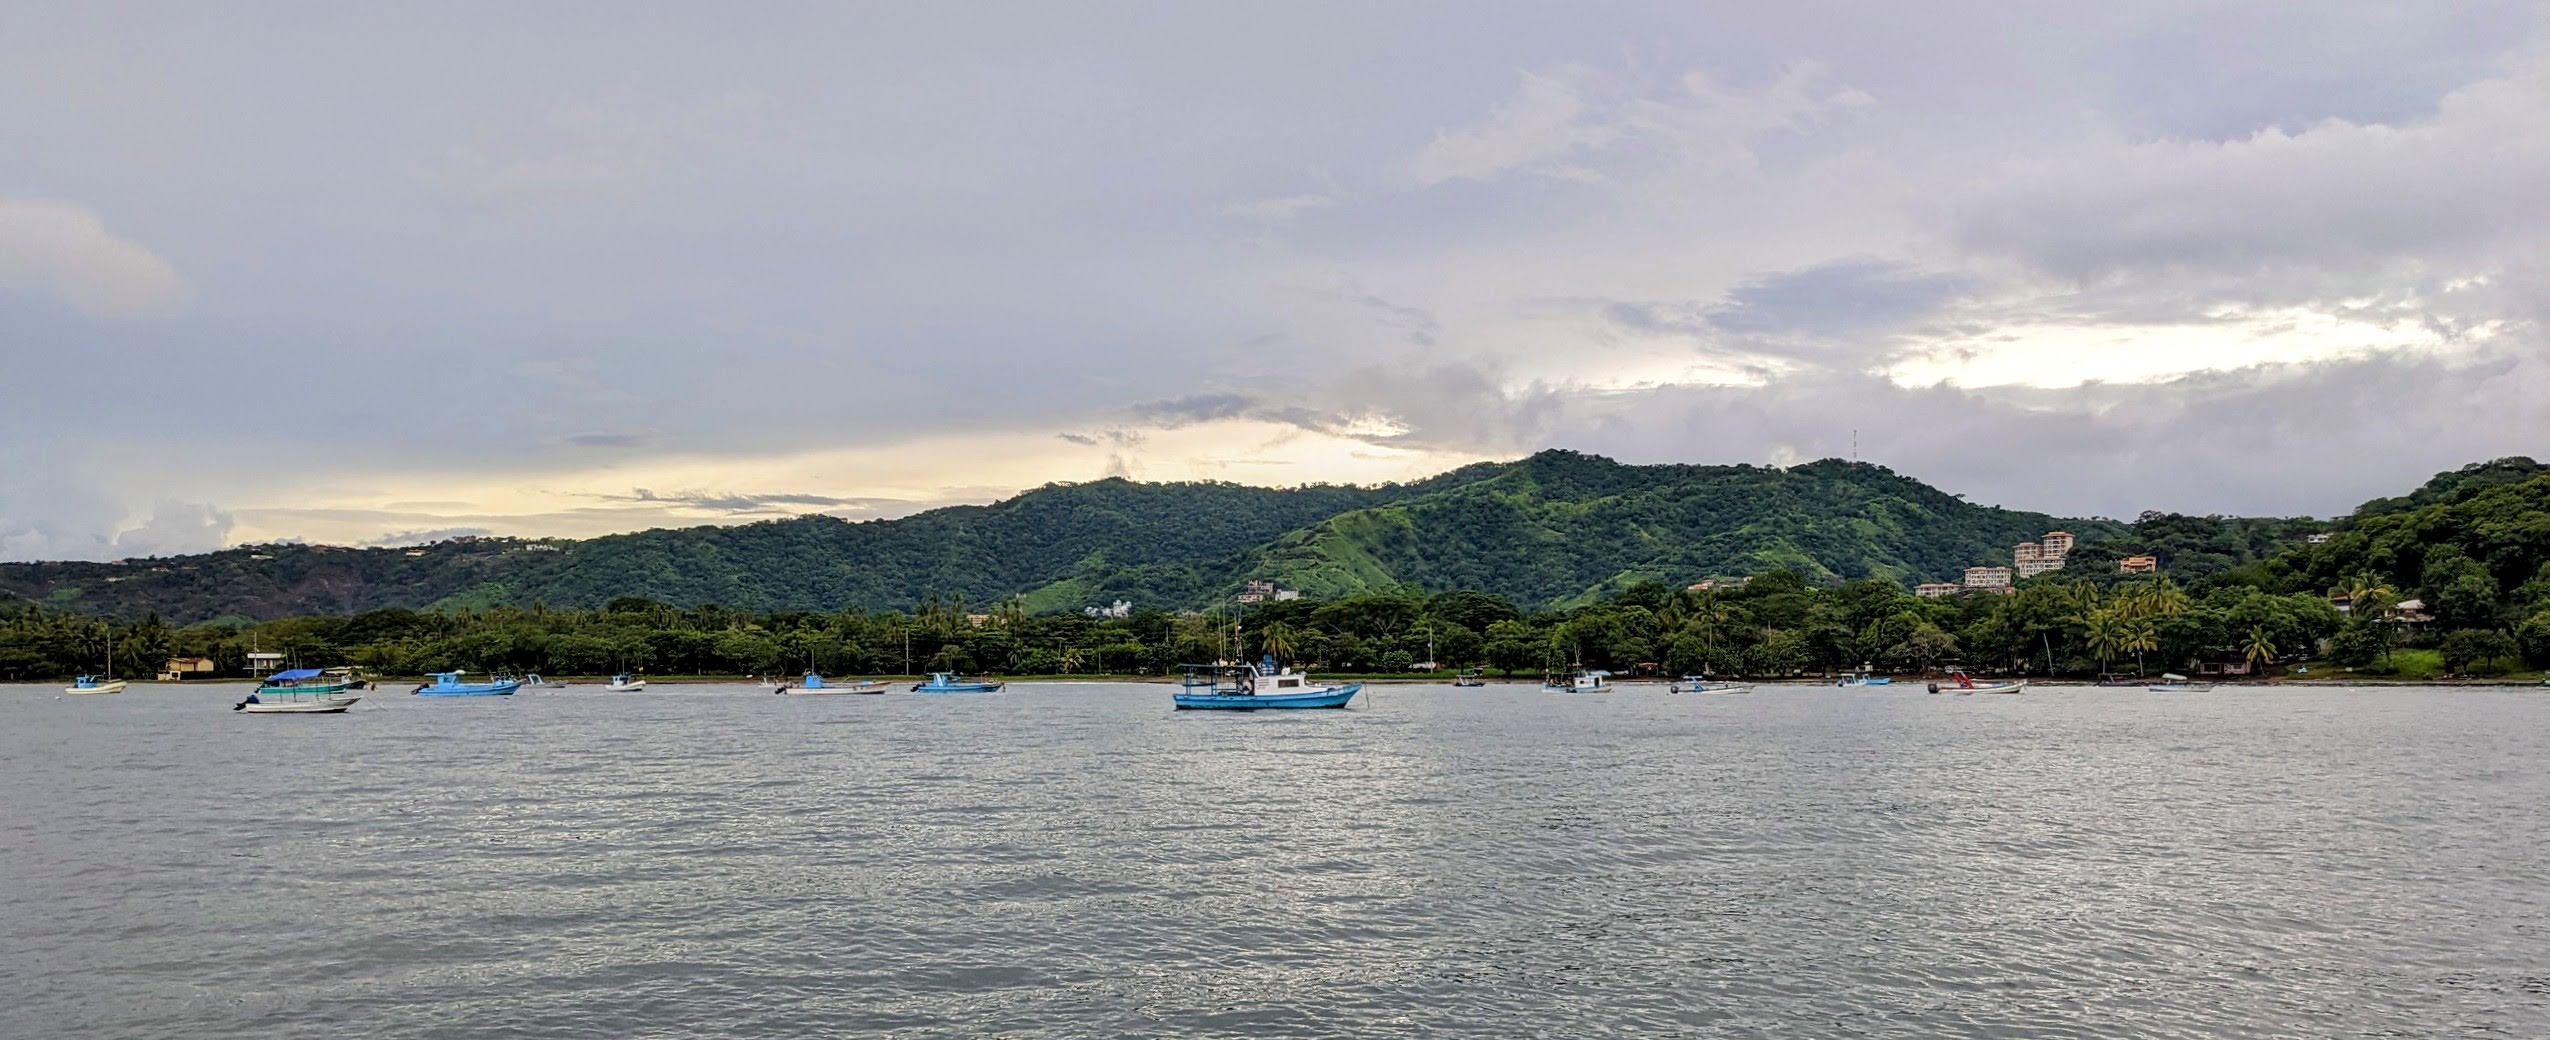 Costa Rica, Playa Del Coco - Entry Procedure